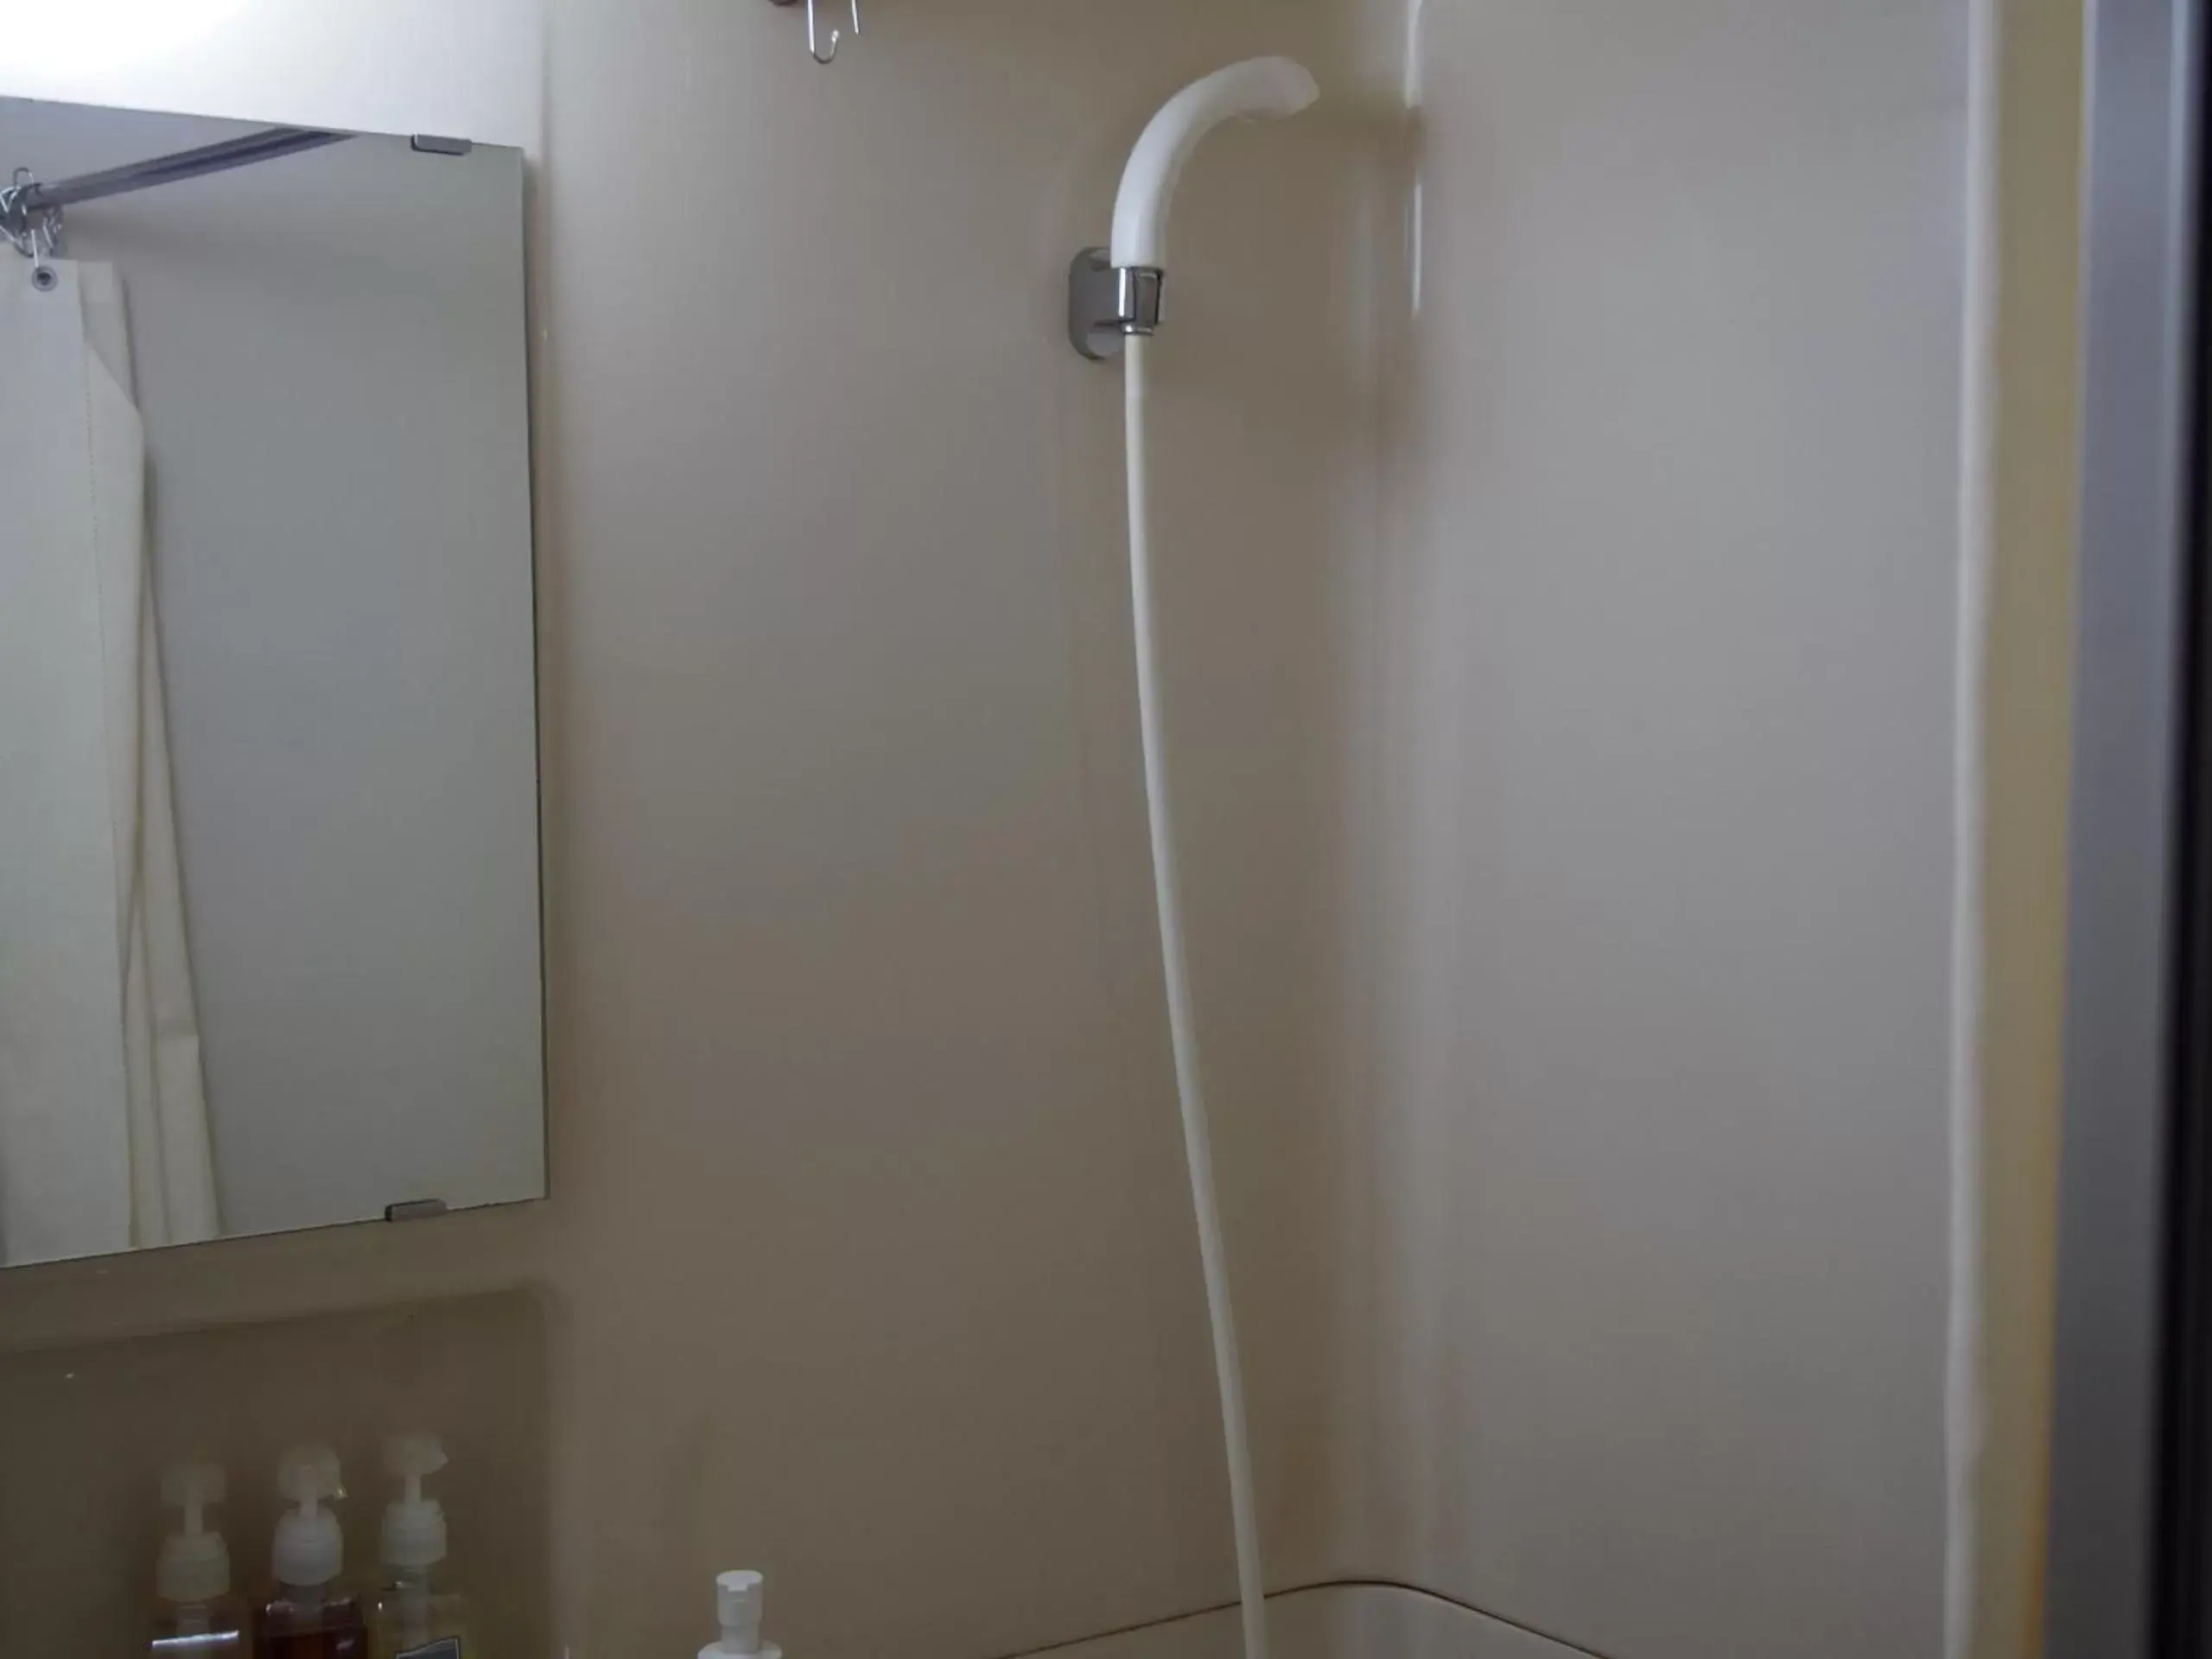 Photo of the whole room, Bathroom in Hotel Sunroute Fukushima